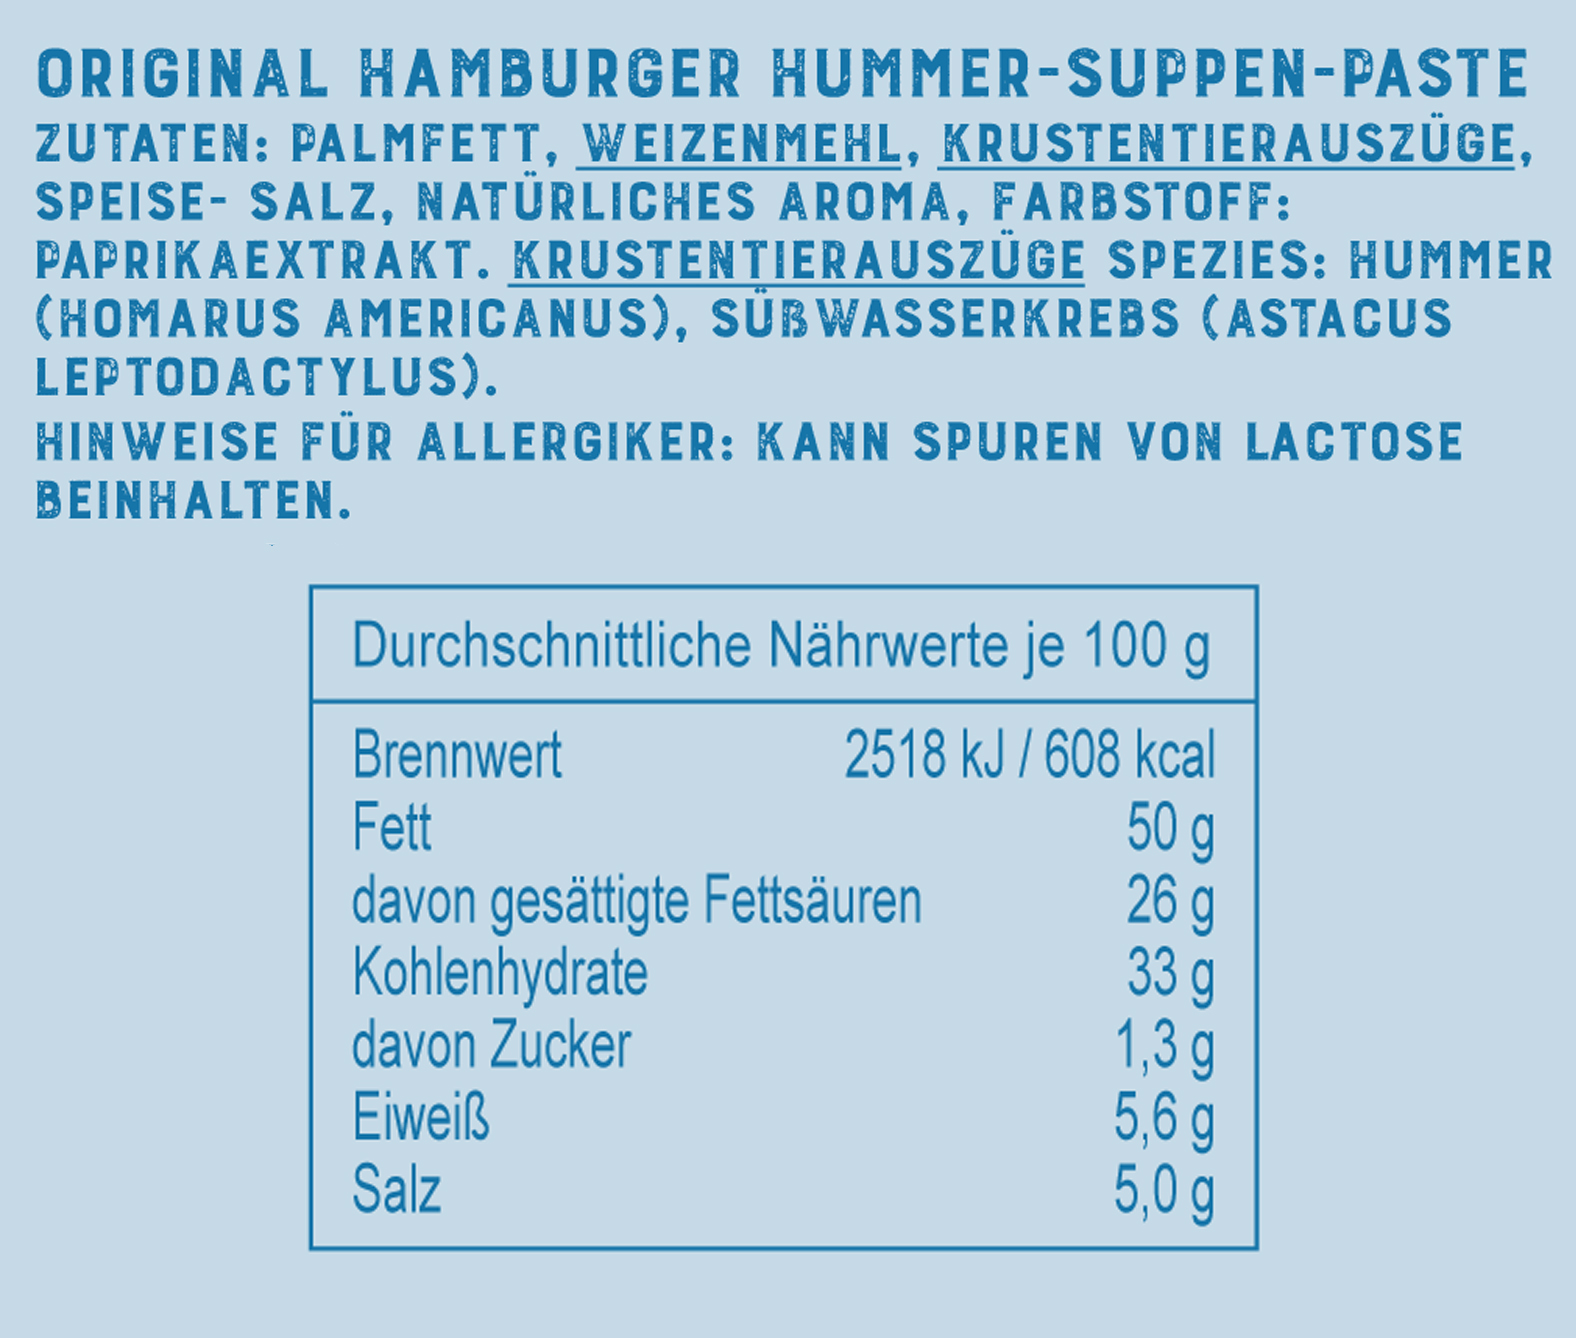 Hummer-Suppen-Paste, 450 g